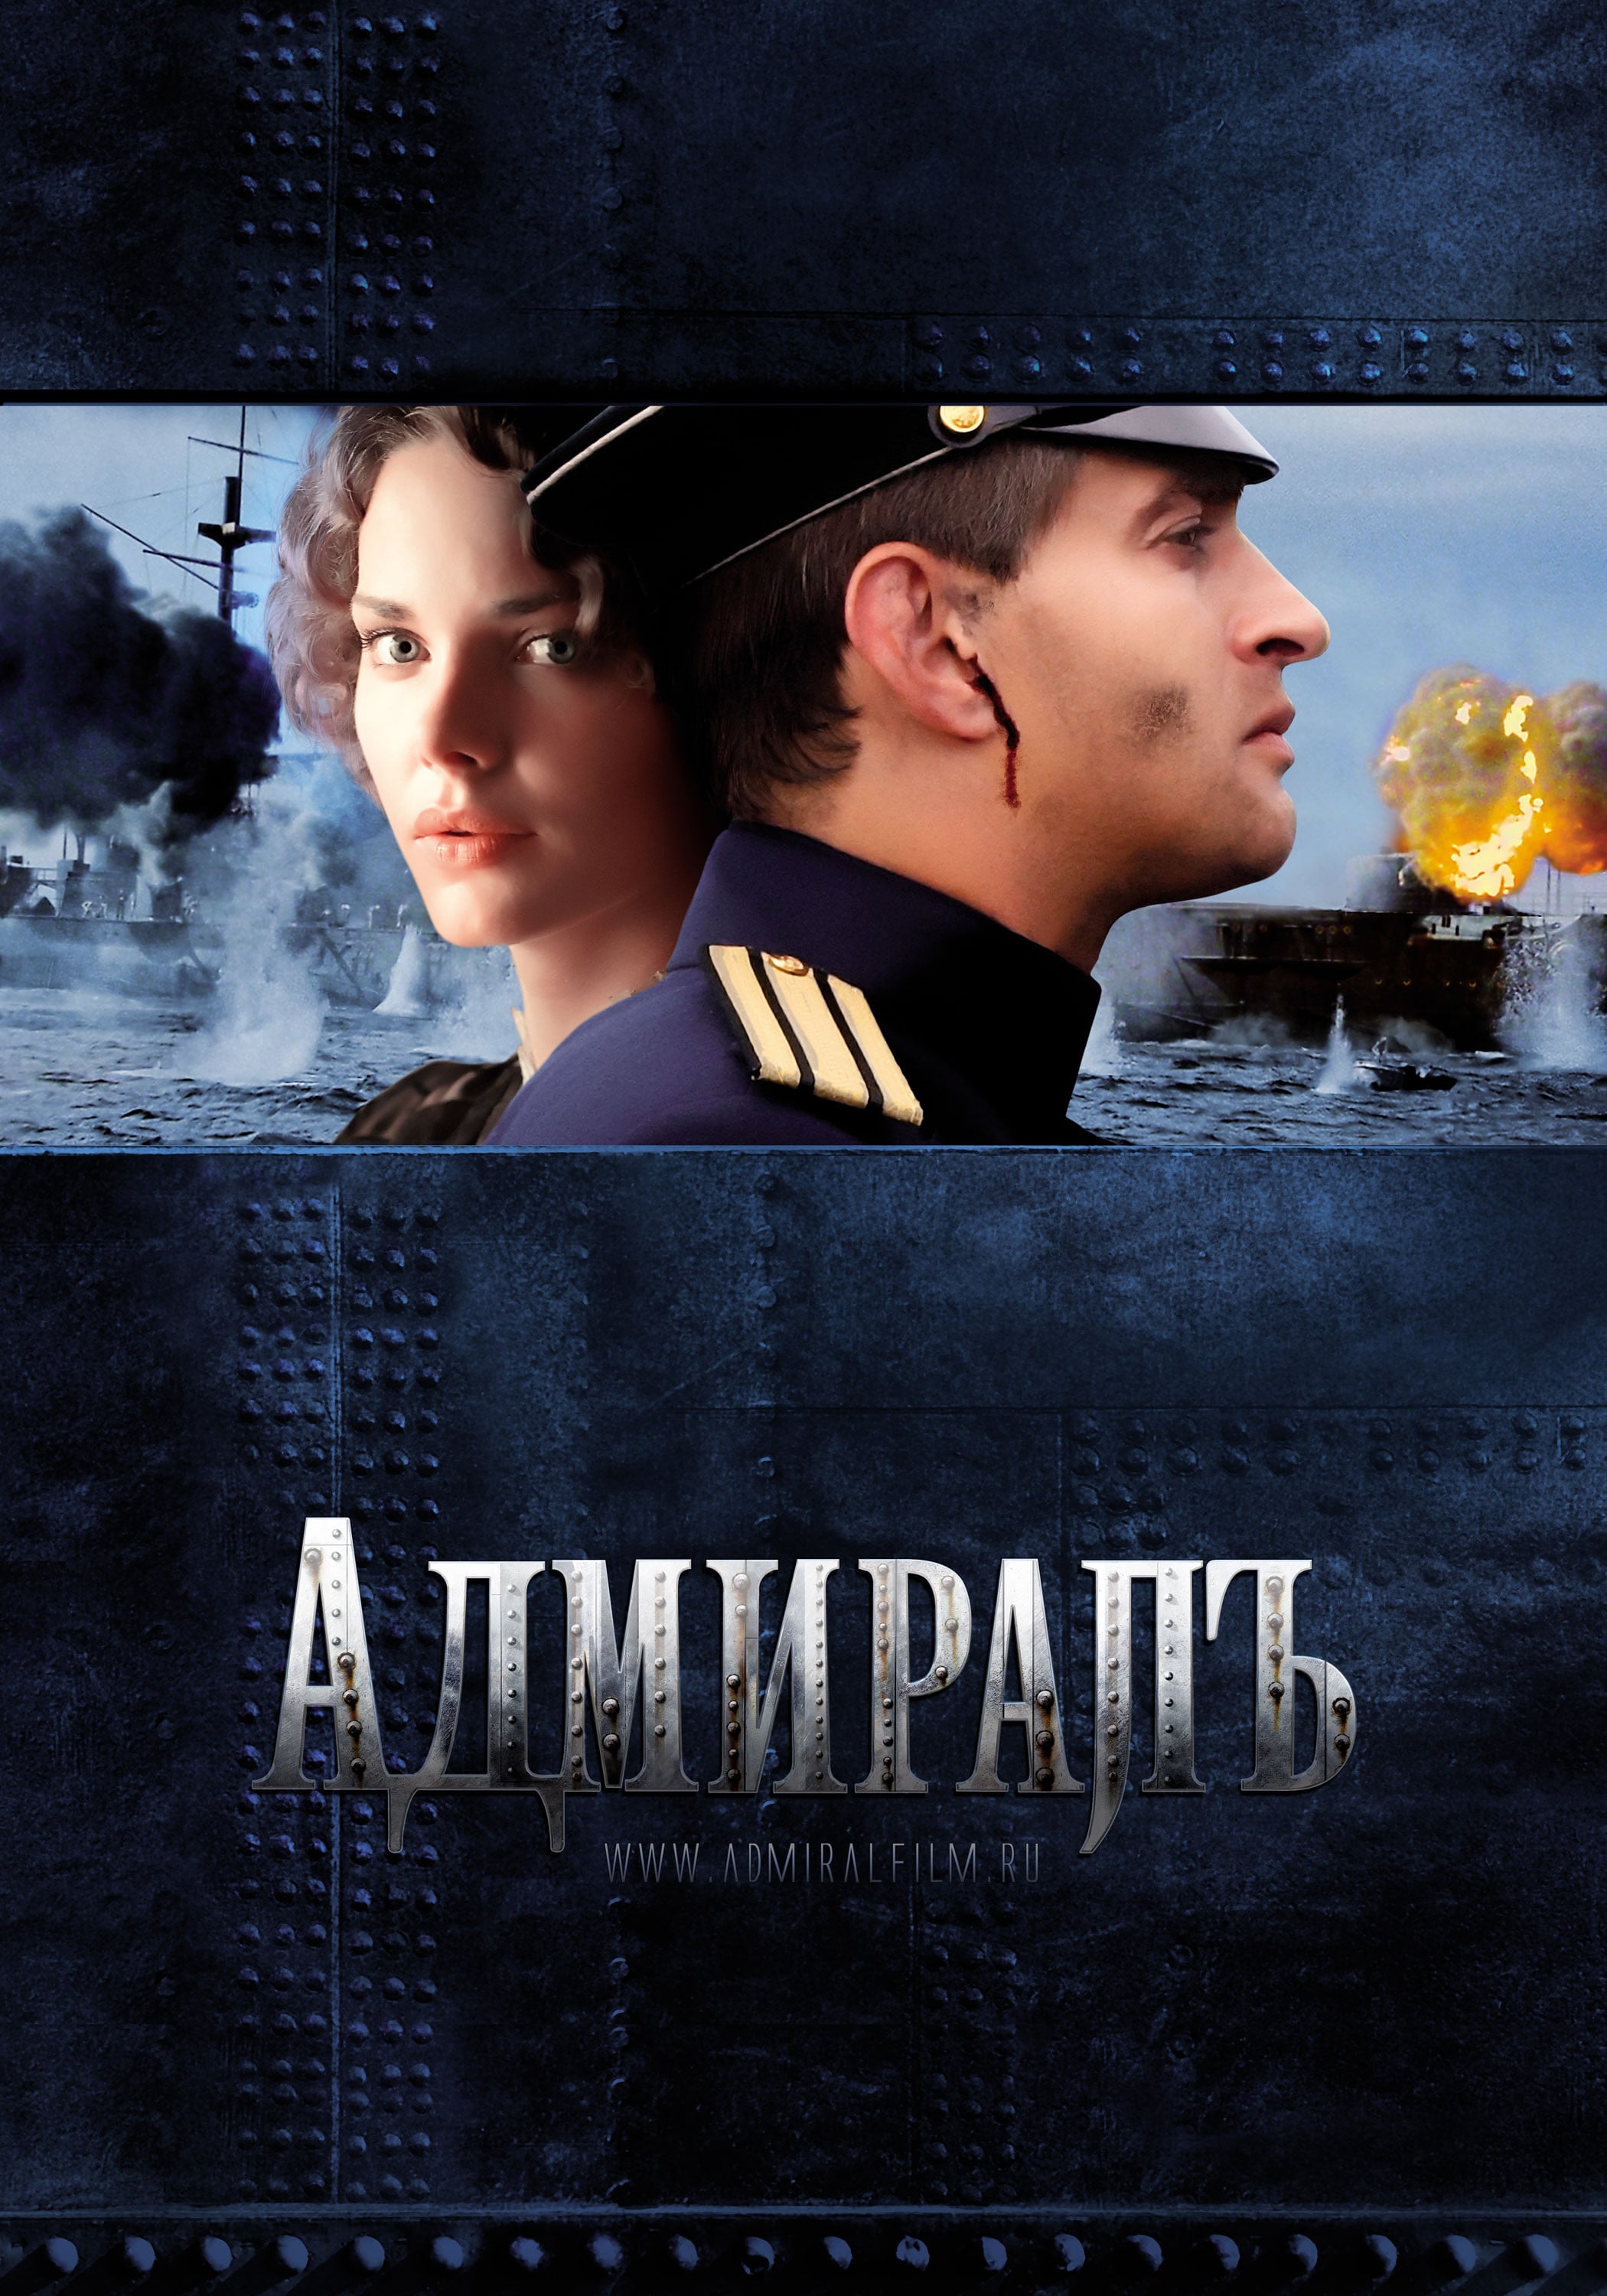 Plakat von "Admiral"